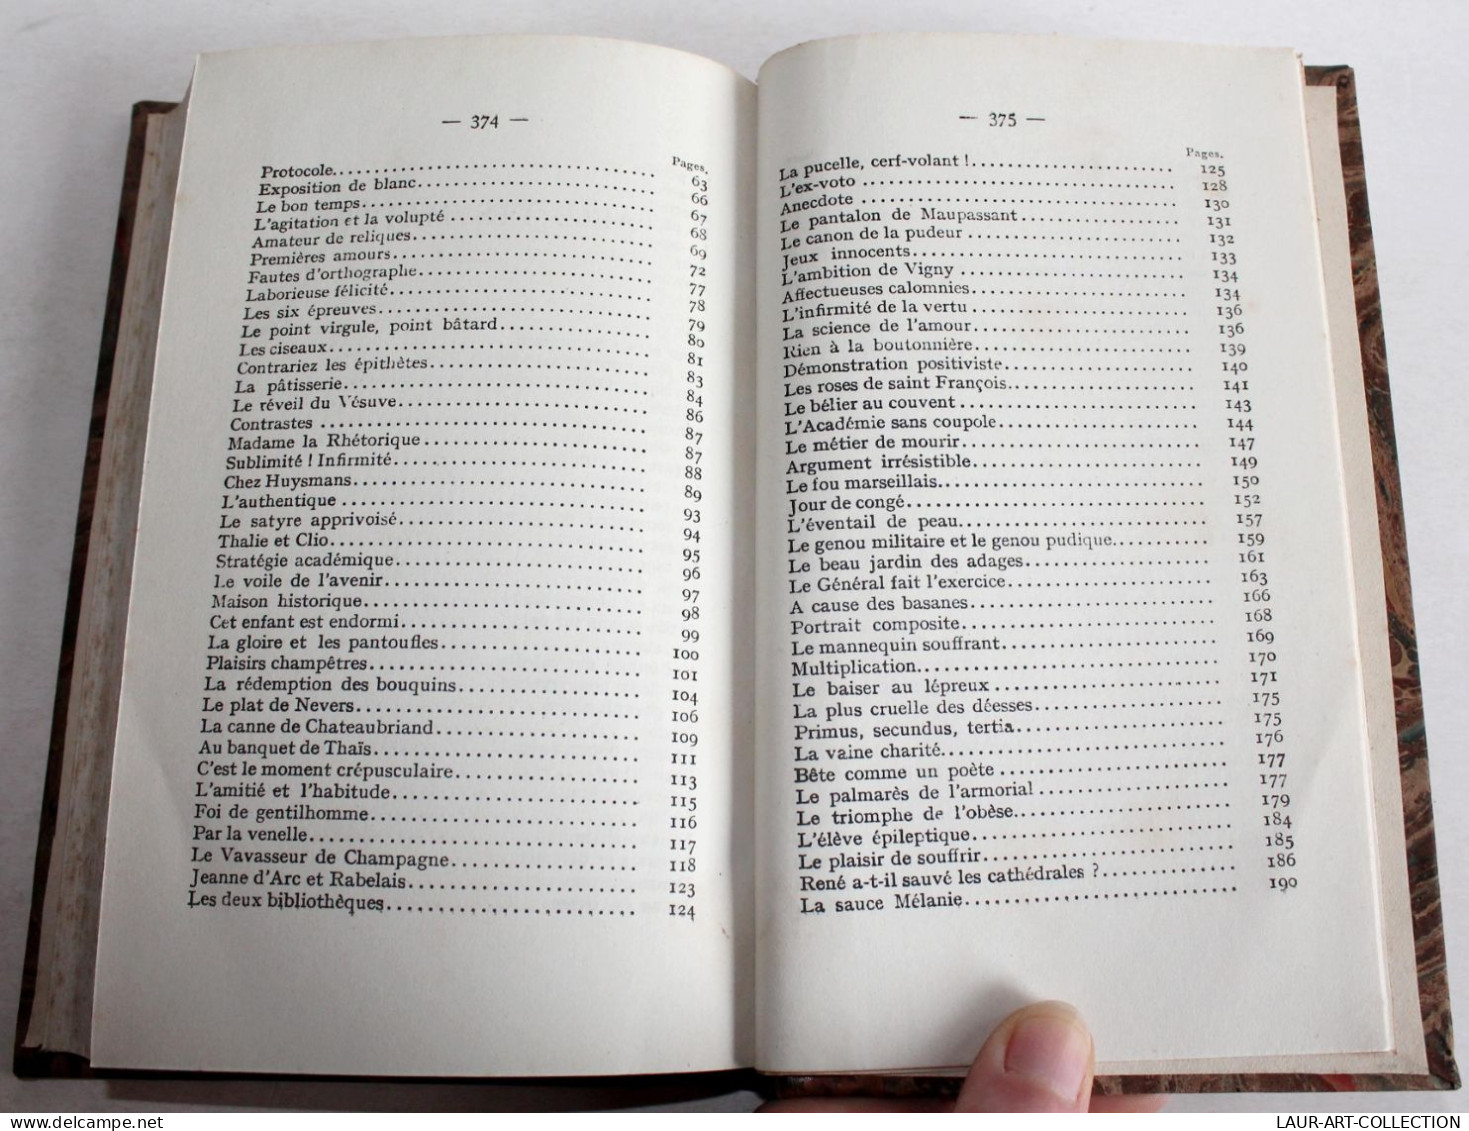 ANATOLE FRANCE EN PANTOUFLES par JEAN JACQUES BROUSSON 1924 LES EDITIONS G. CRES, LIVRE ANCIEN XXe SIECLE (2204.79)